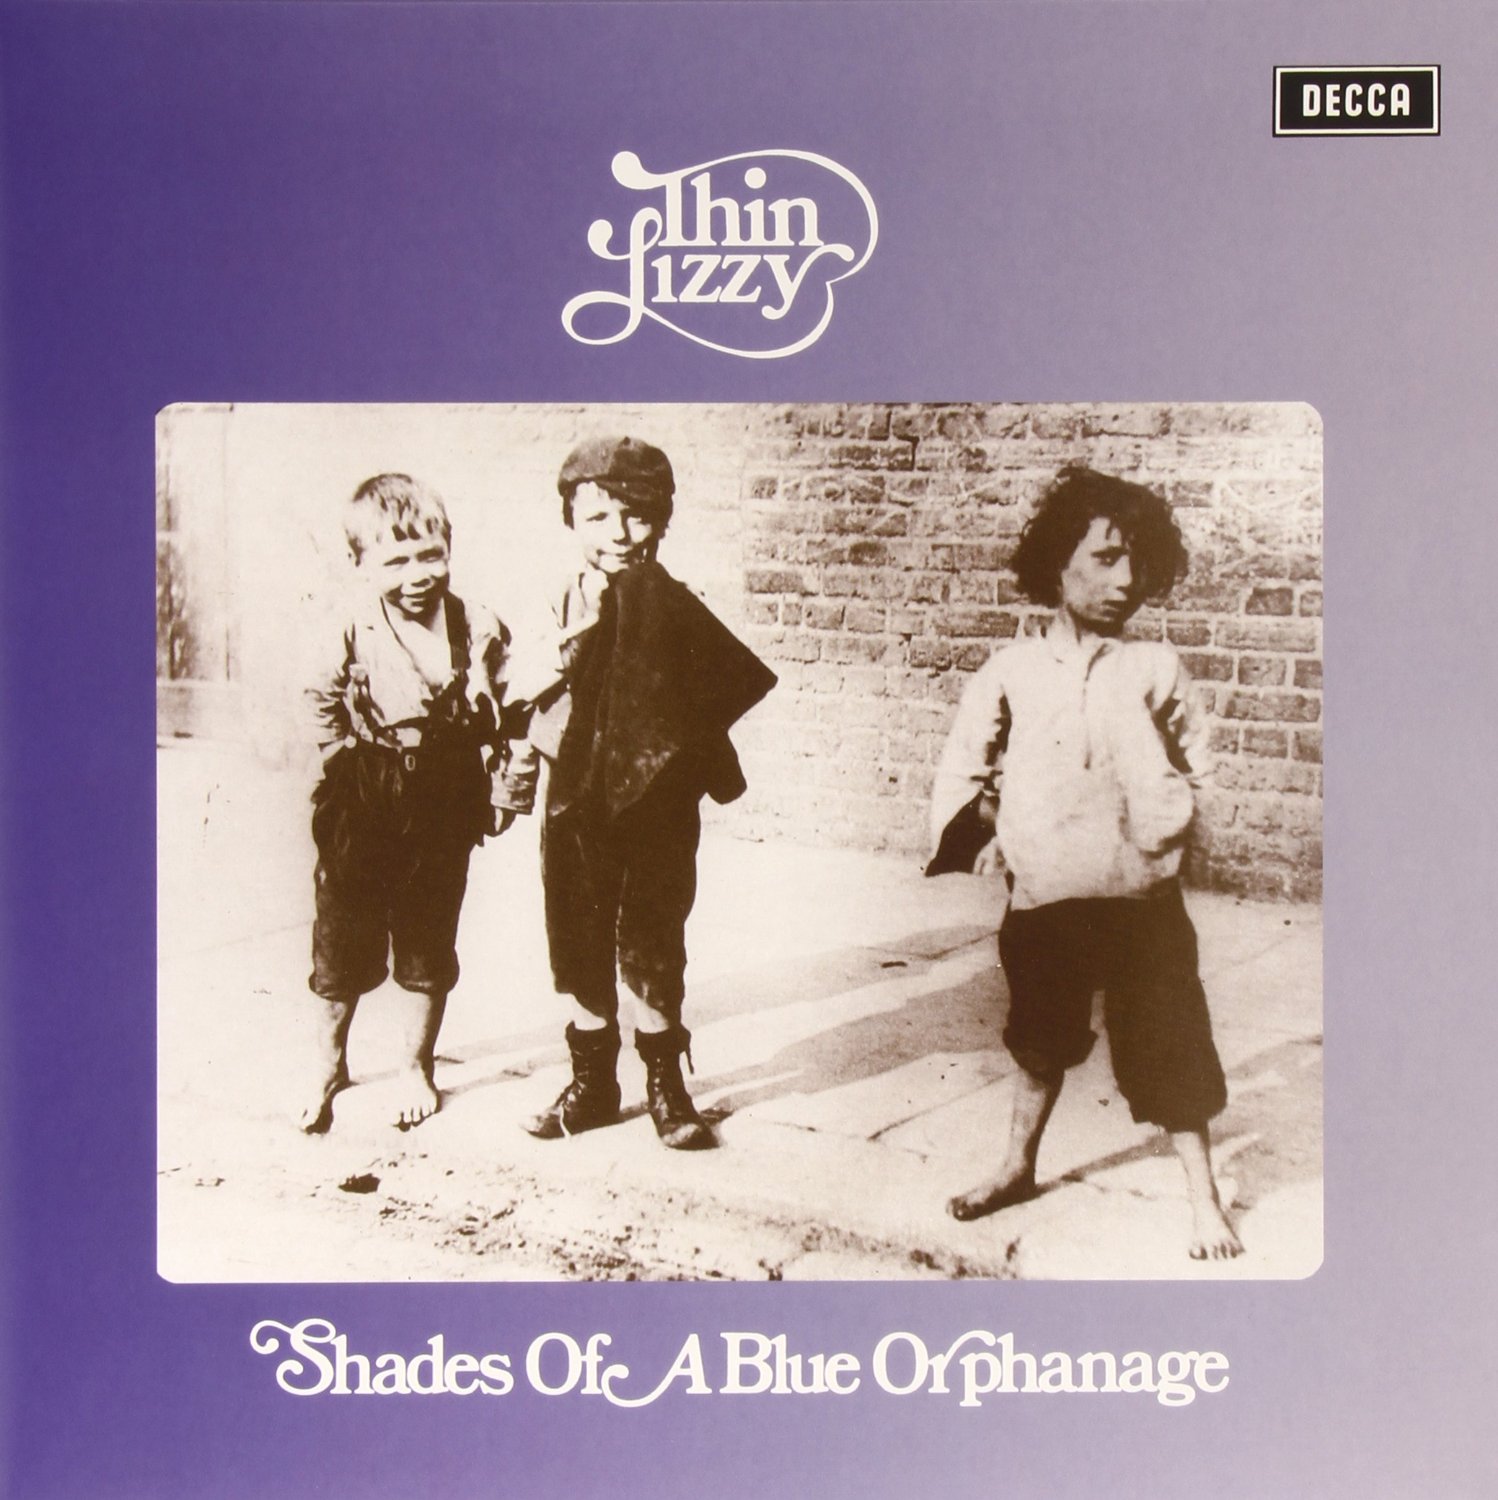 Las Galletas de Maria: Thin Lizzy - Shades Of A Blue Orphanage (1972 IRL)